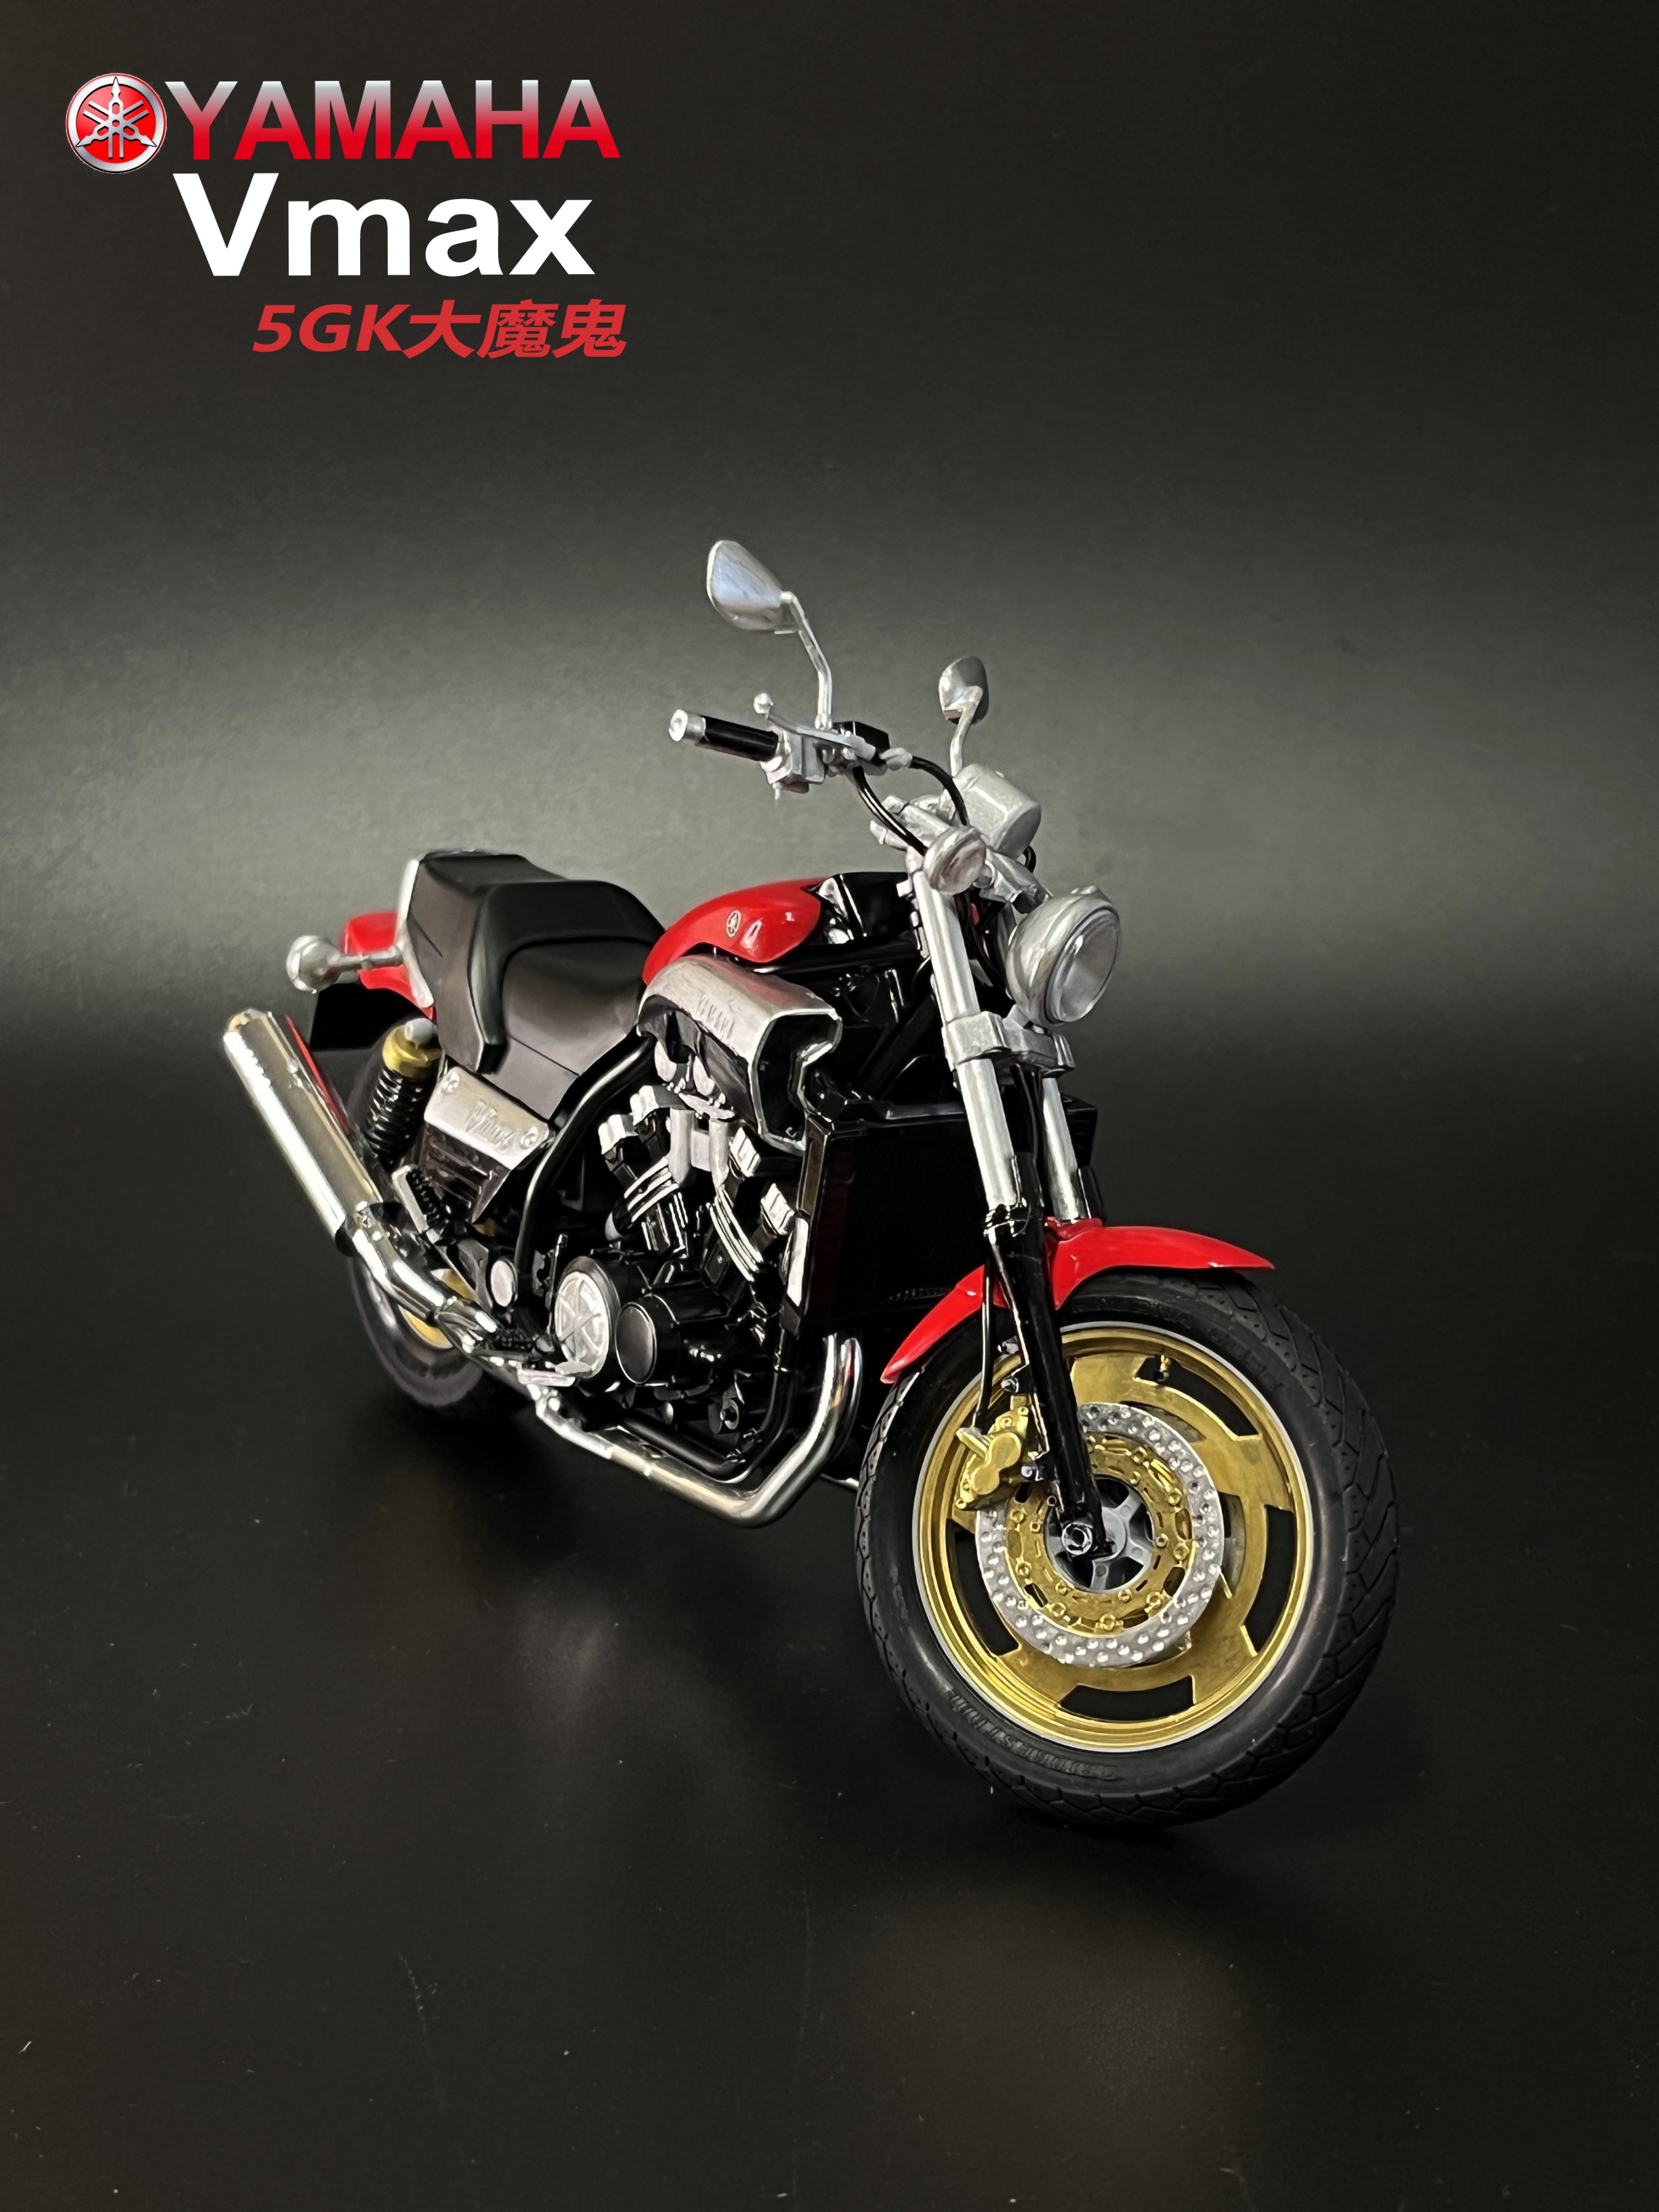 现货青岛社 1:12 雅马哈 YAMAHA Vmax '07 摩托车已拼装成品模型